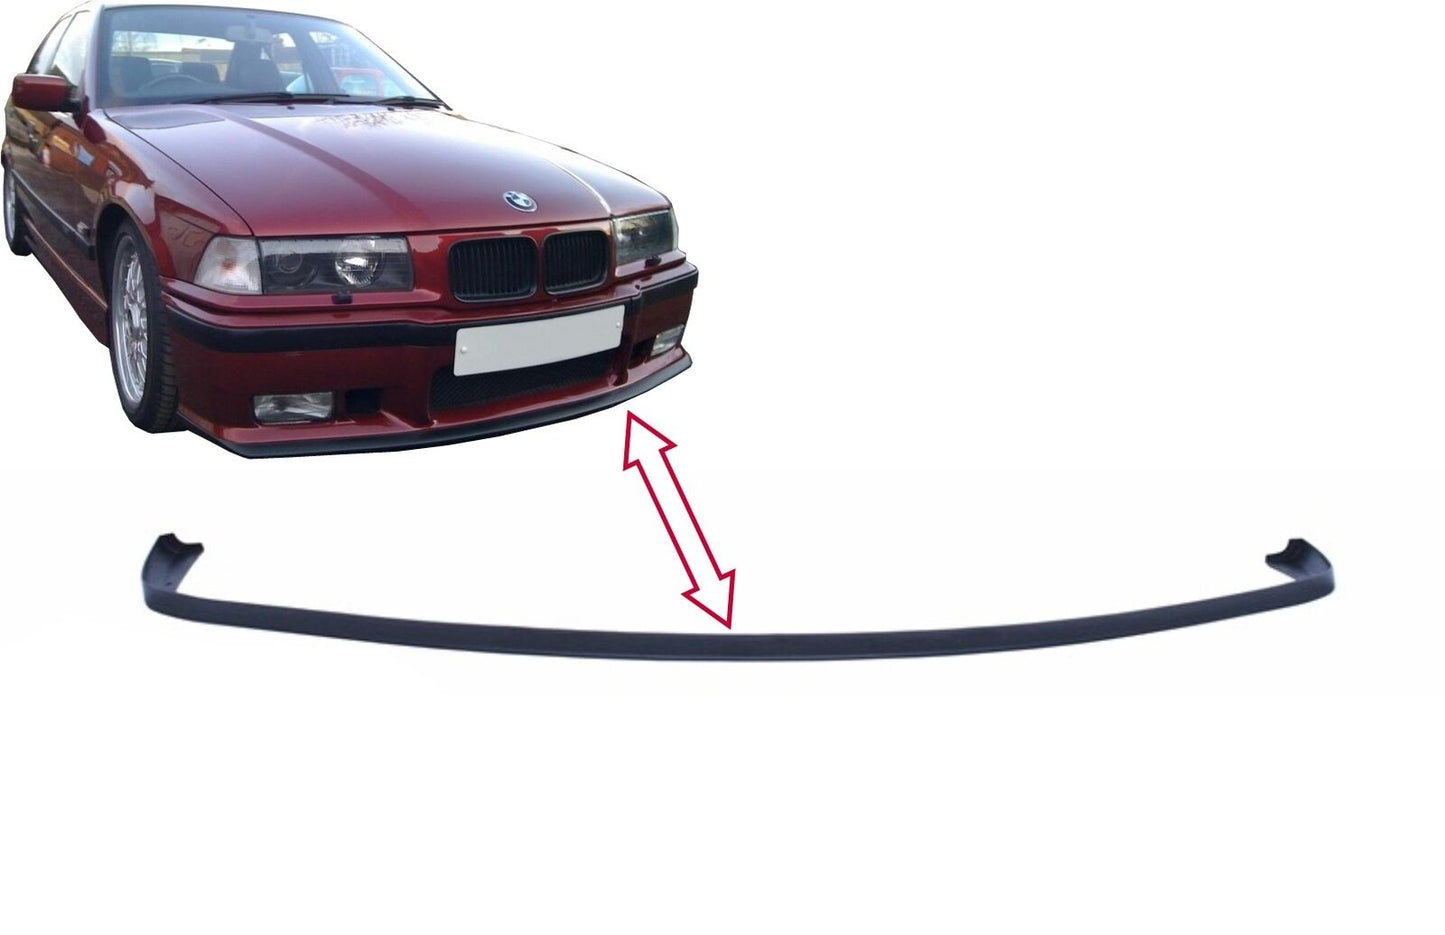 Spoiler paraurti anteriore per BMW E36 Serie 3 92-98 Lip M3 Design